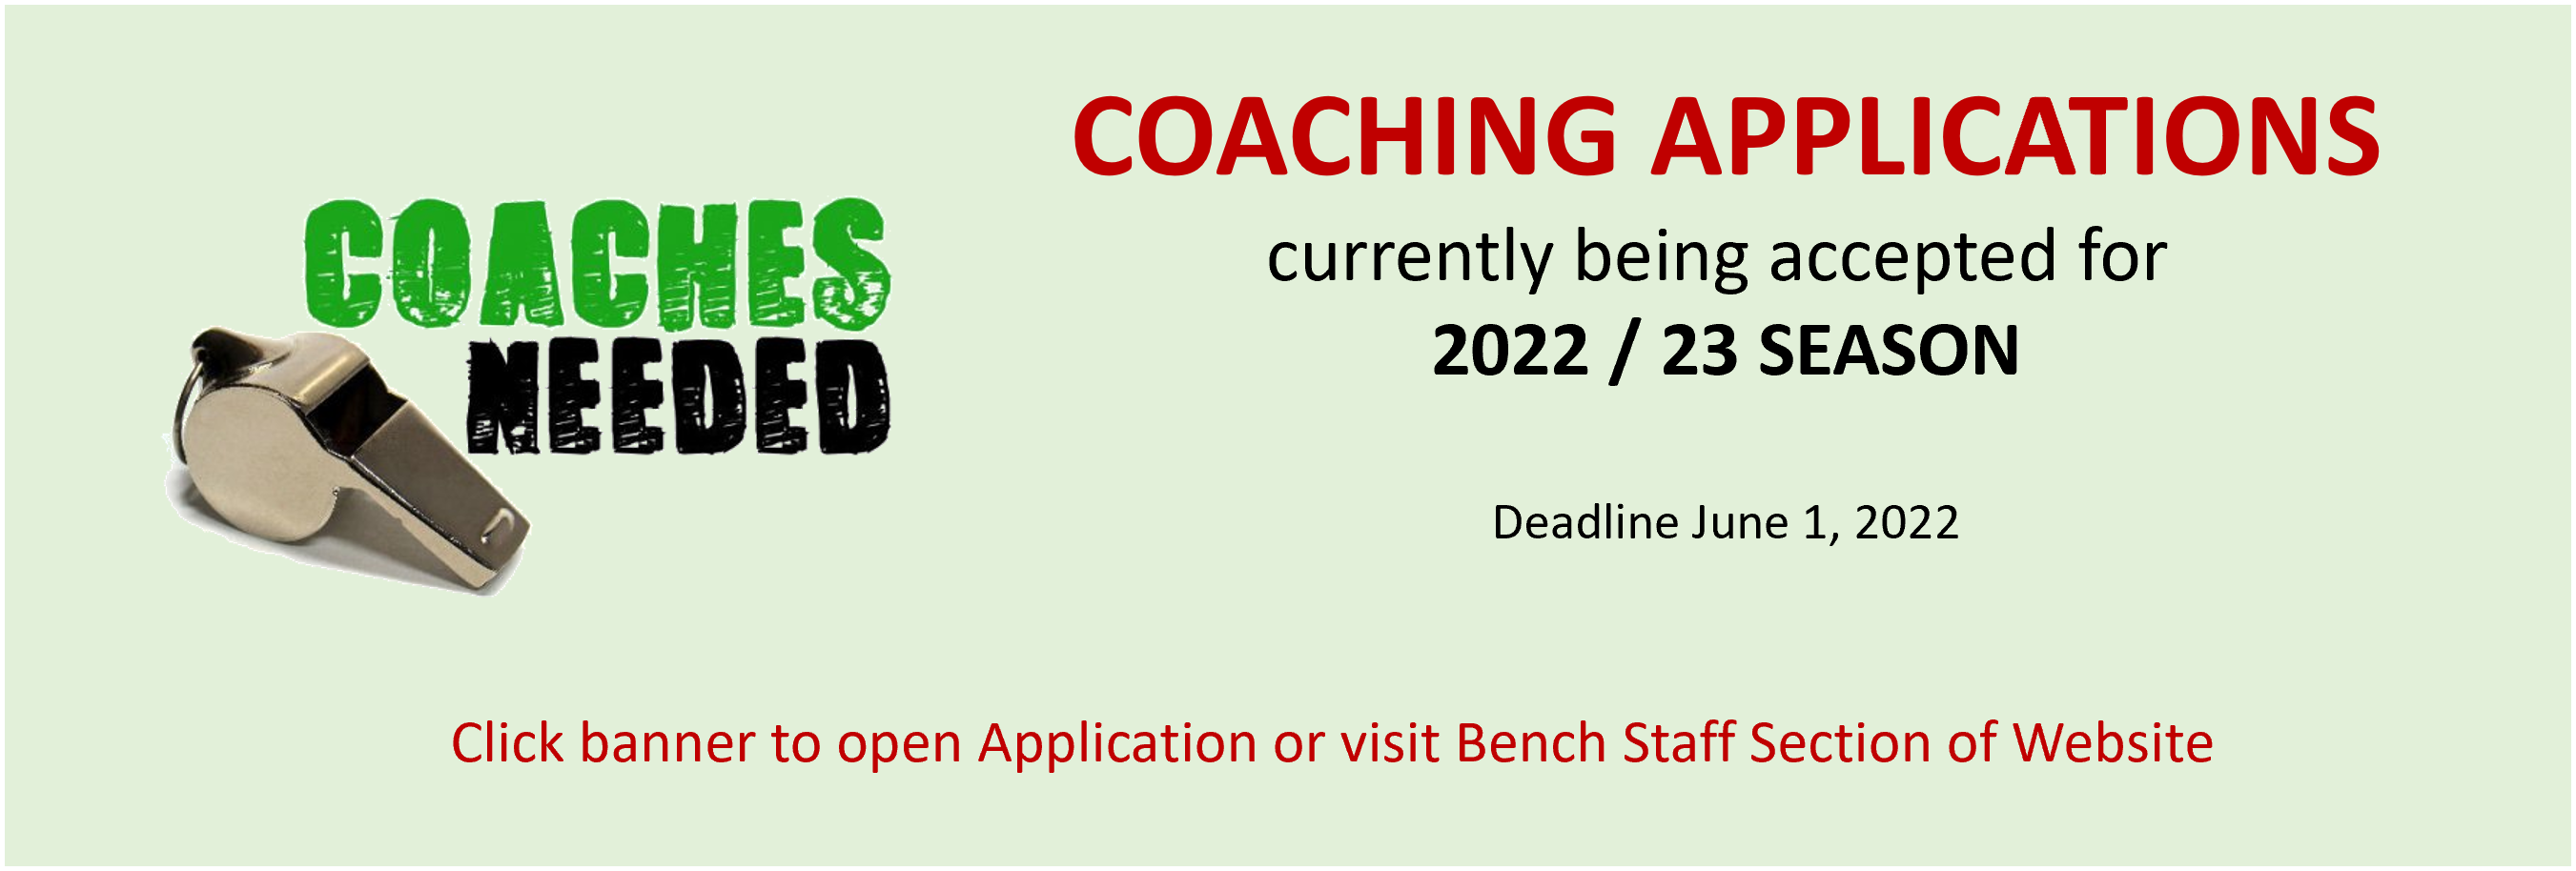 Coaching Application